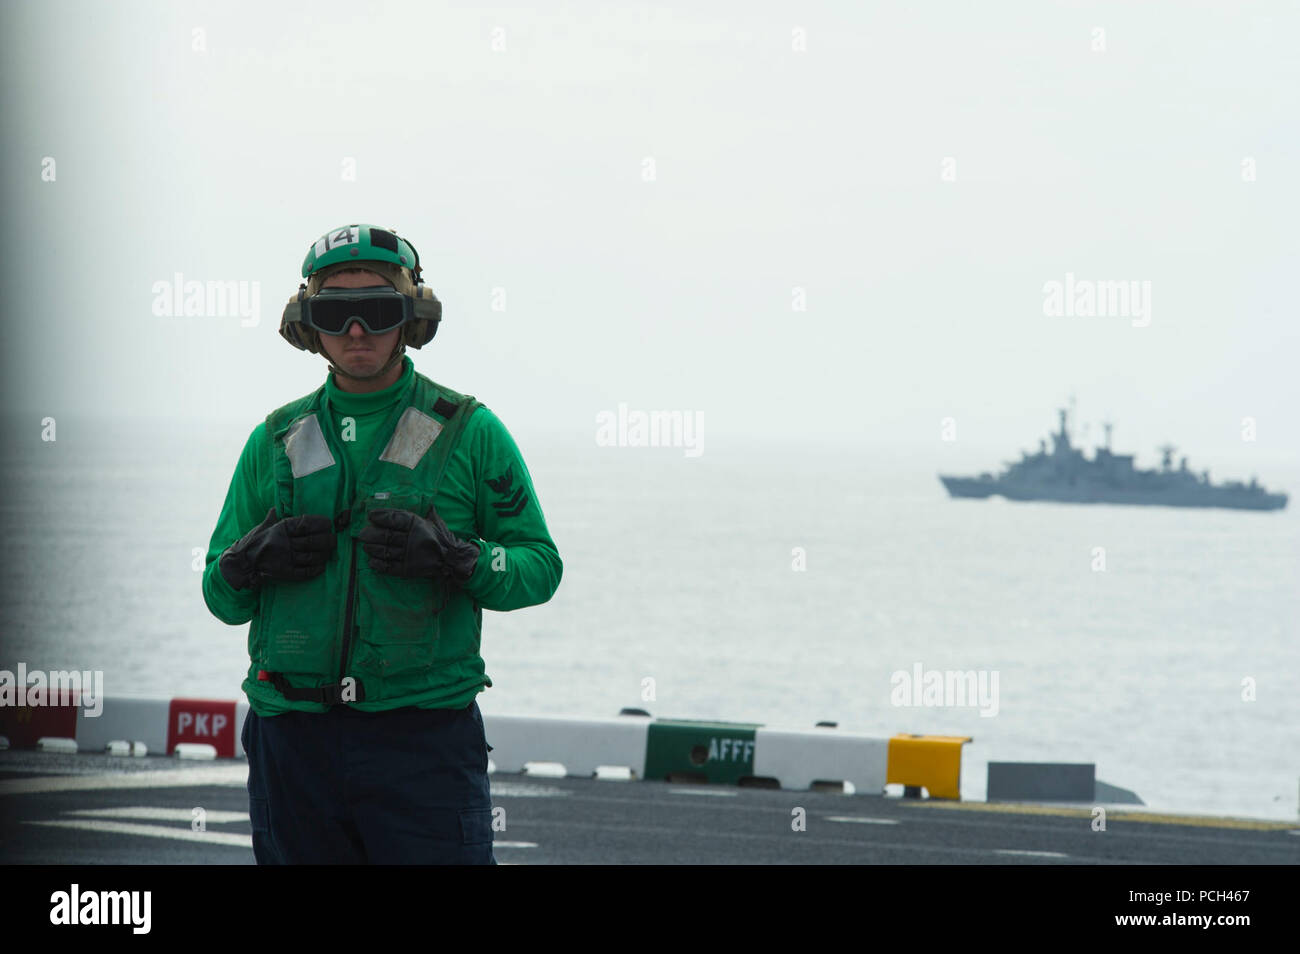 Un marin américain affecté au navire d'assaut amphibie USS America (LHA 6) attend sur le pont de la frégate de la marine chilienne le CNS Capitan Prat (FFGM 11), l'arrière-plan, voiles à proximité au cours d'un exercice bilatéral le 27 août 2014, dans l'océan Pacifique. L'Amérique est engagée dans une mission d'effectuer des missions de formation avec les pays partenaires dans les Amériques avant de signaler à son nouveau port d'attache de San Diego. Le navire a été configuré pour être commandé cérémonieusement le 11 octobre 2014. Banque D'Images